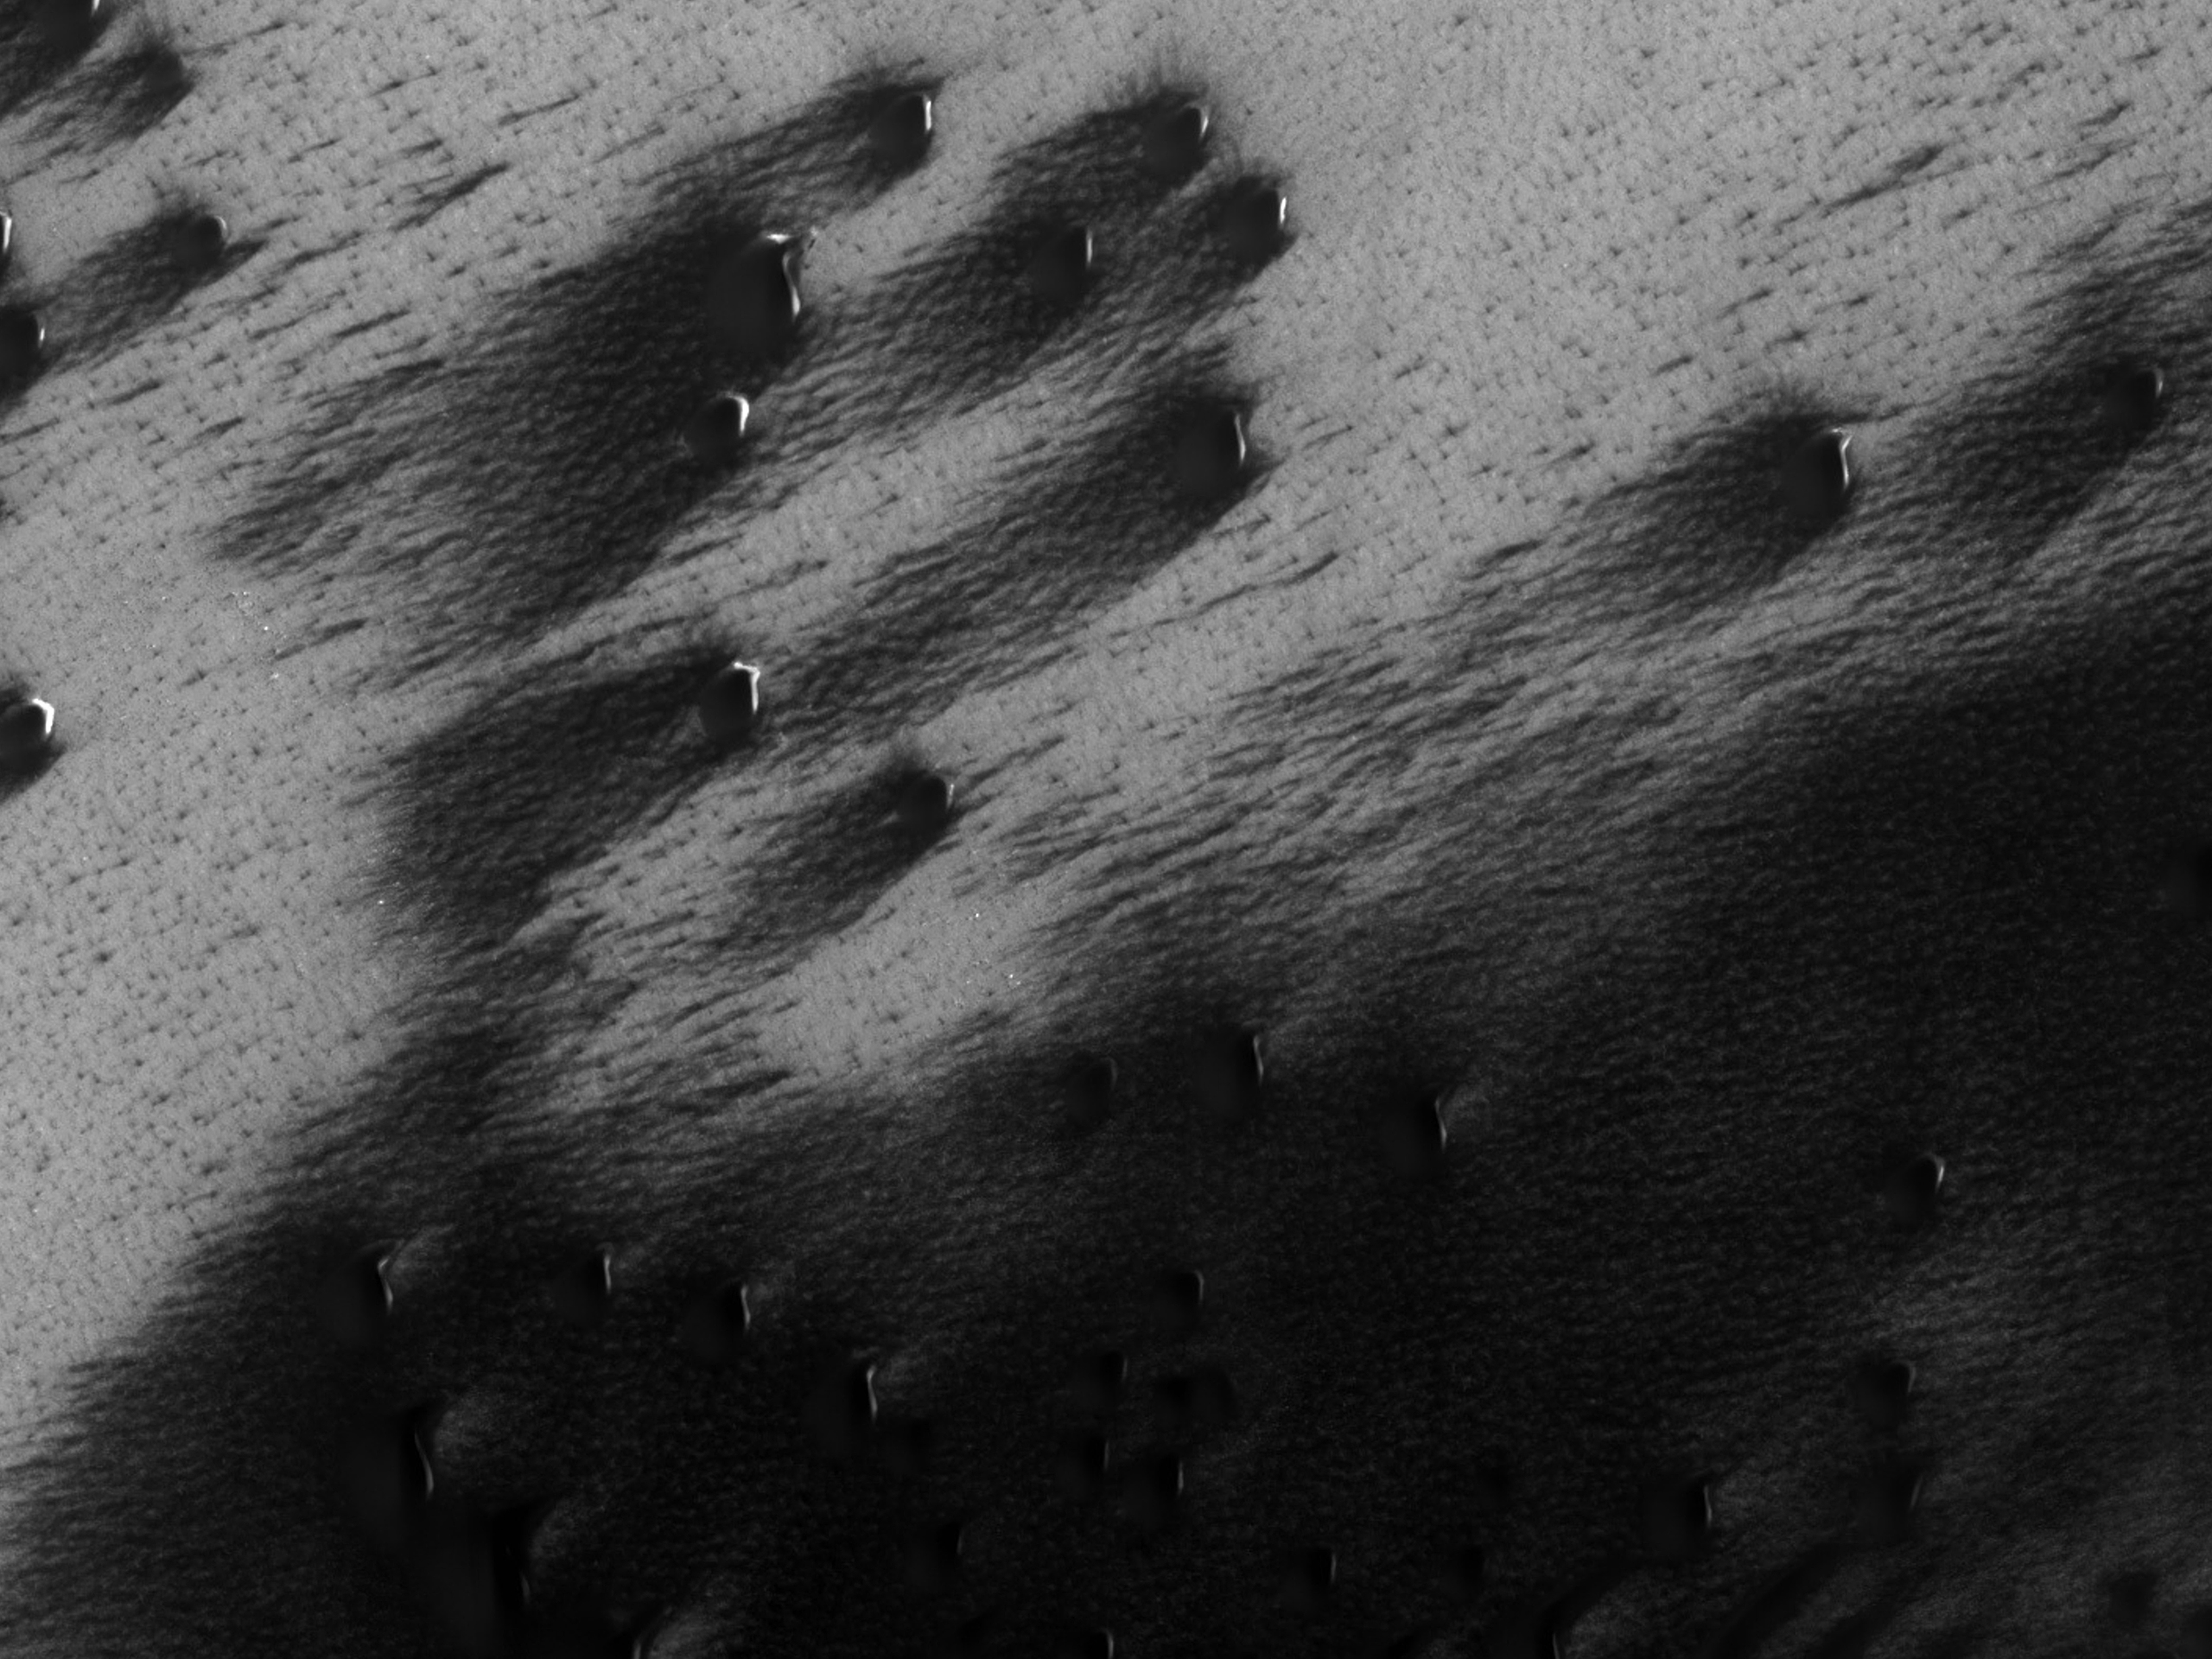 Homoktakaró széle a Mars északi sarkvidéki területén